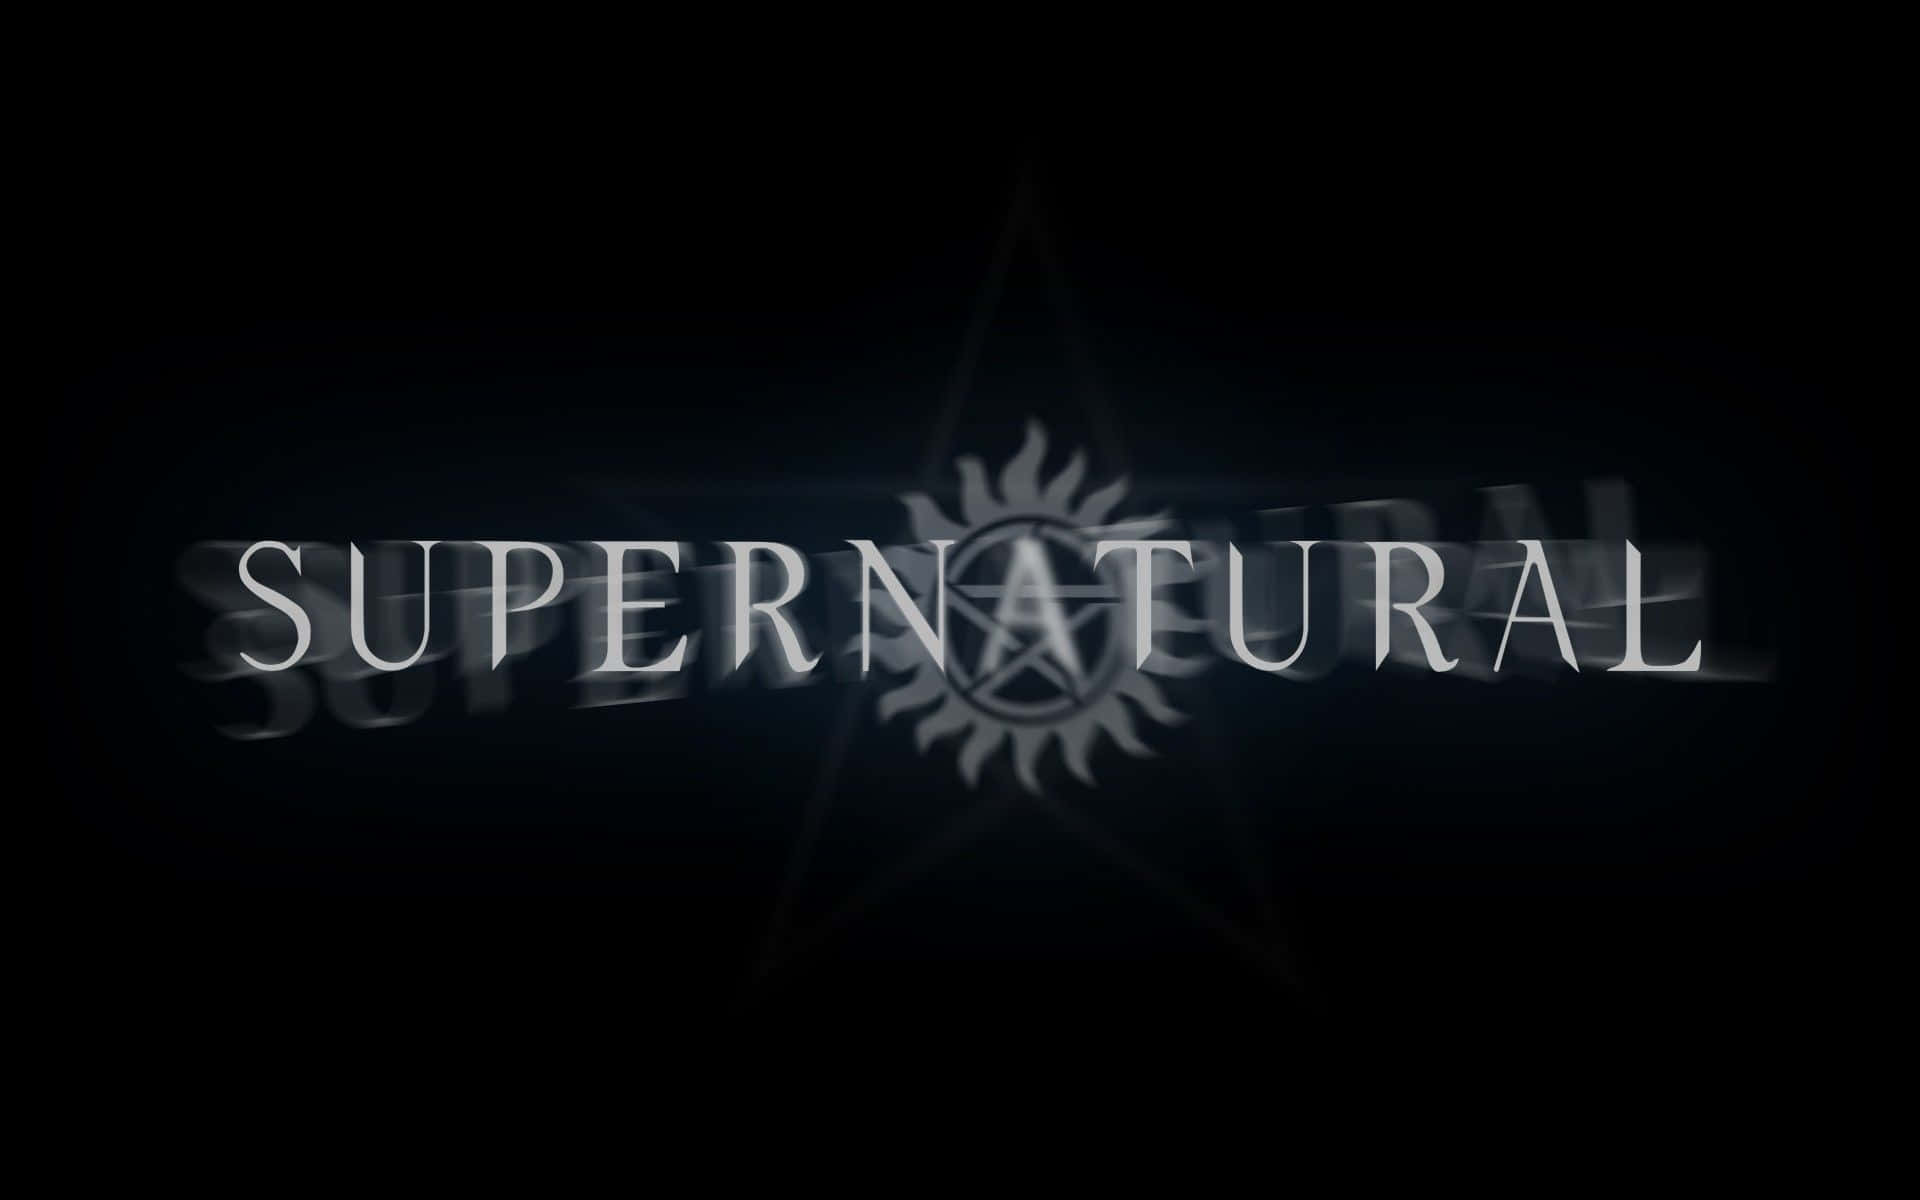 Enter the World of Supernatural